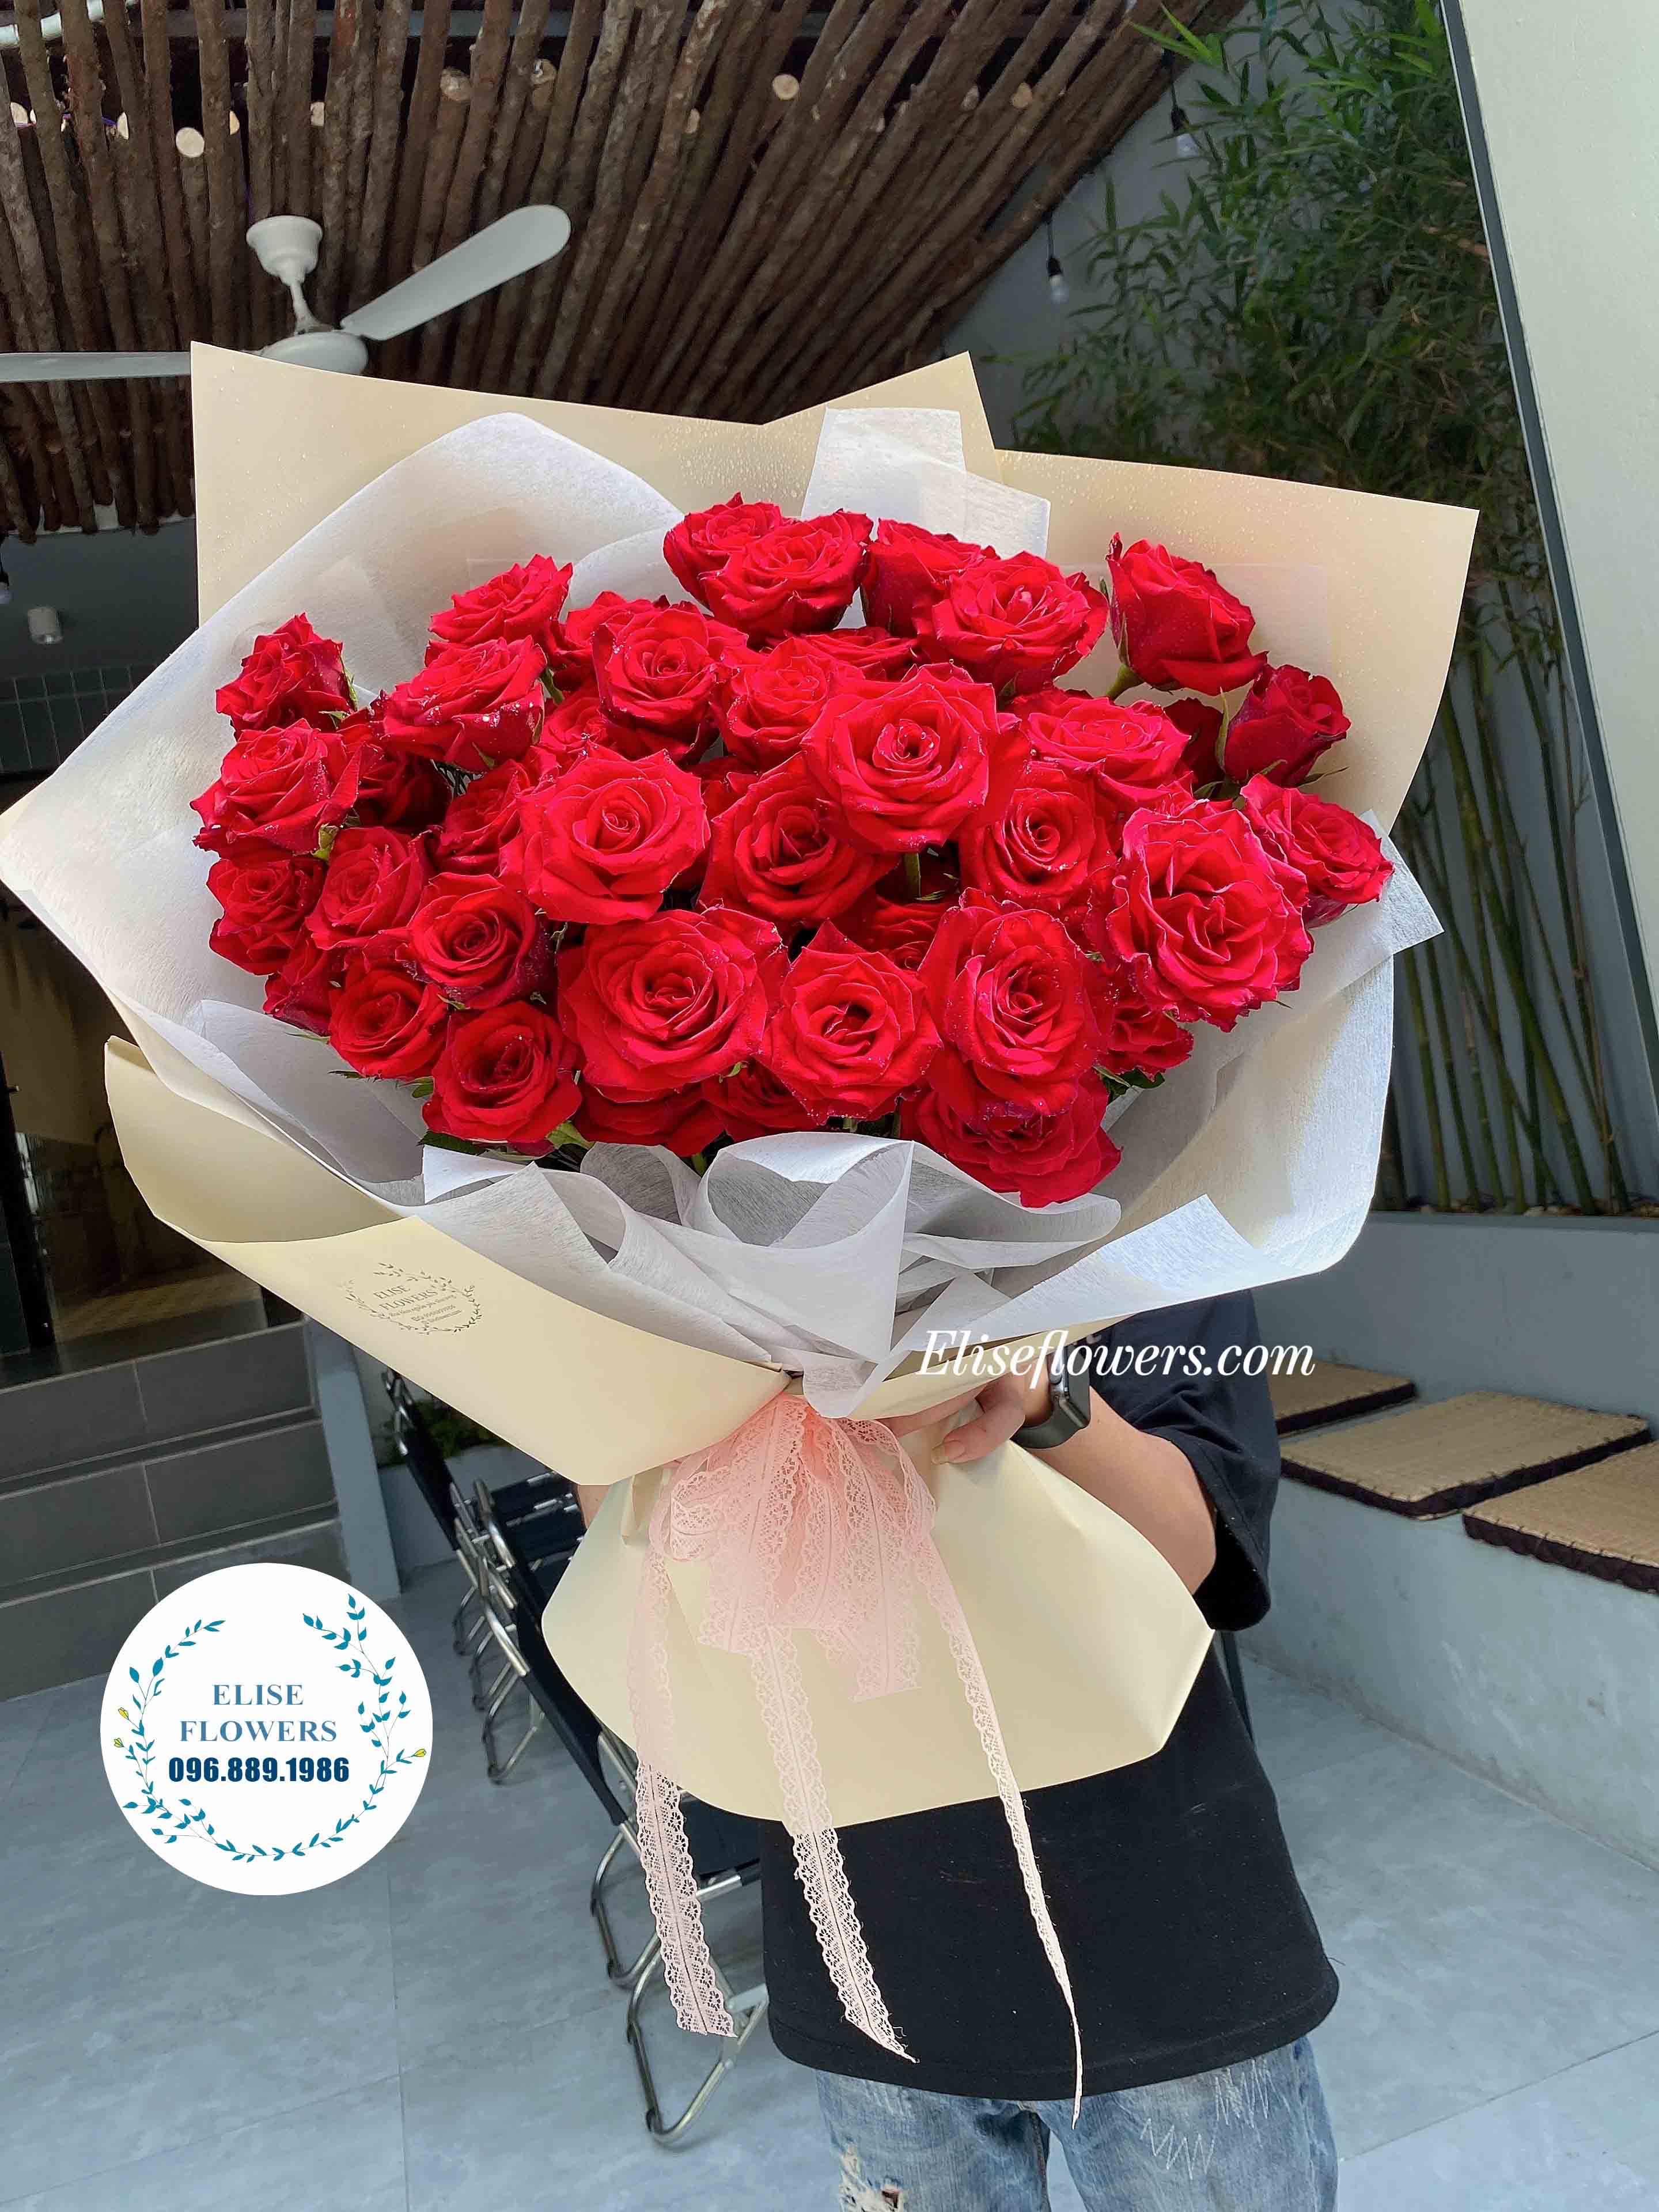 Bó hoa hồng đỏ đẹp đơn giản tinh tế - Bó hoa hồng đỏ đẹp nhất - Bó hoa hồng đỏ nhập khẩu đẹp ở Hà Nội